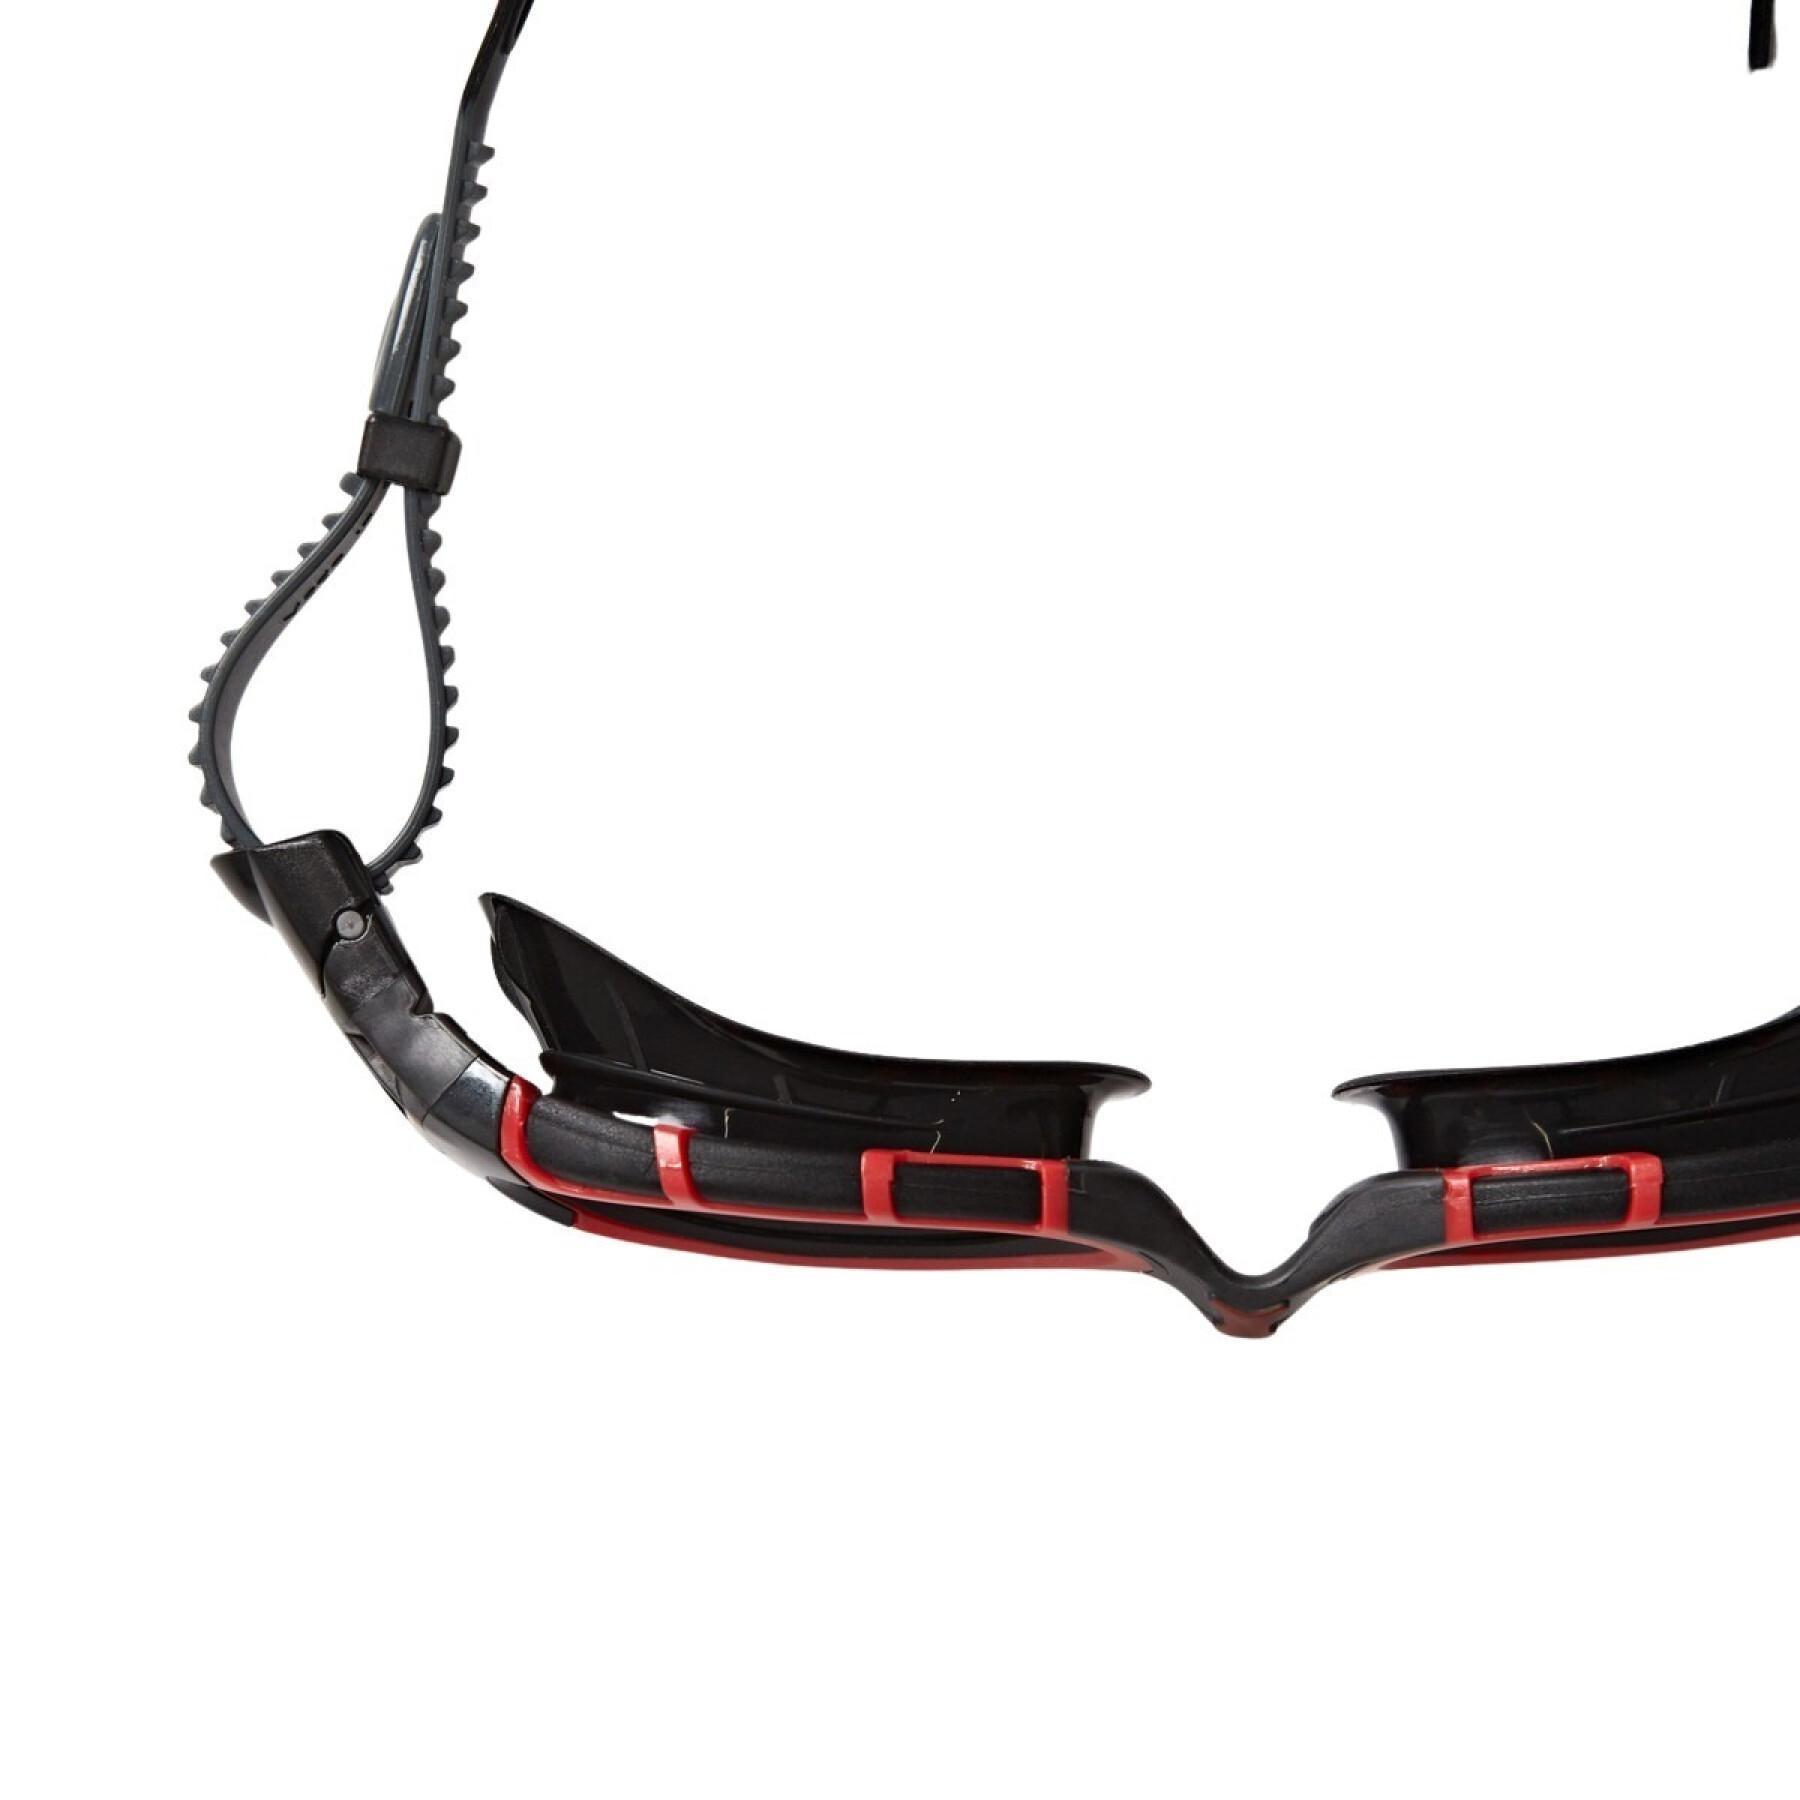 Ultra polarized swimming goggles Zoggs Predator Flex